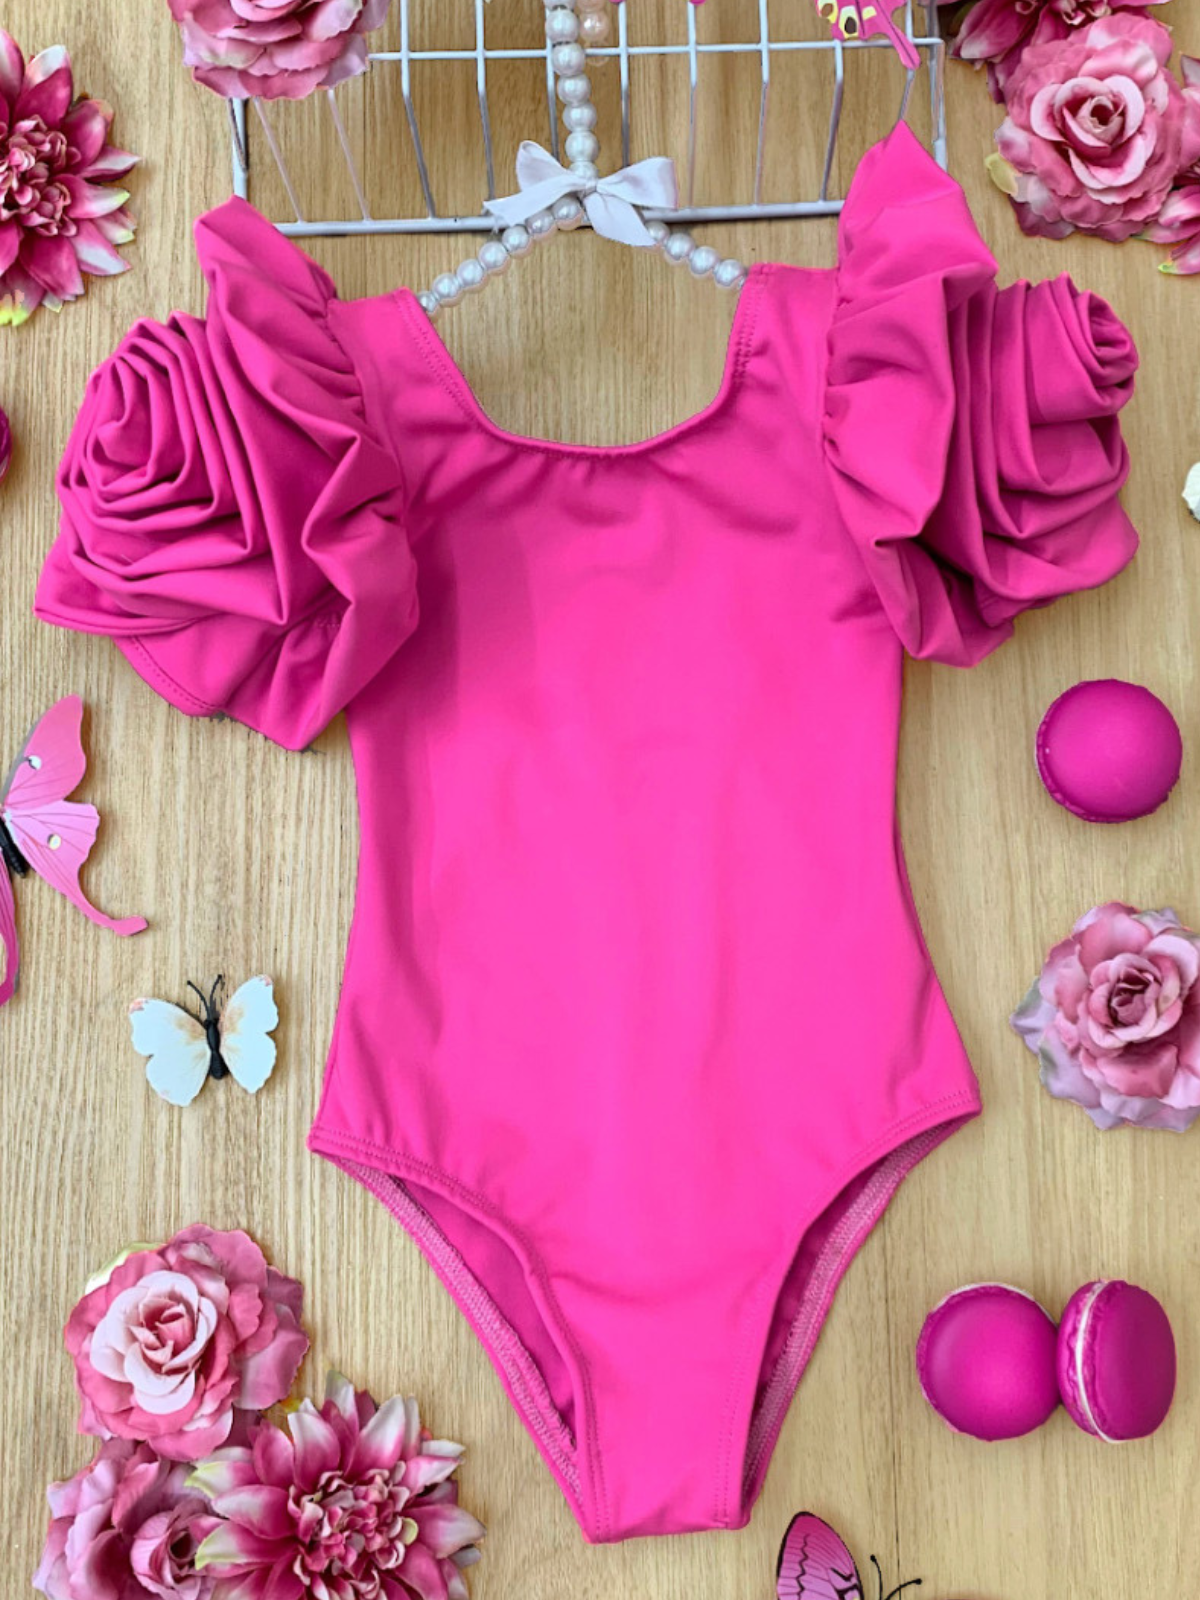 Girls Rose Sleeve Pink One Piece Swimsuit | Mia Belle Girls Swimwear